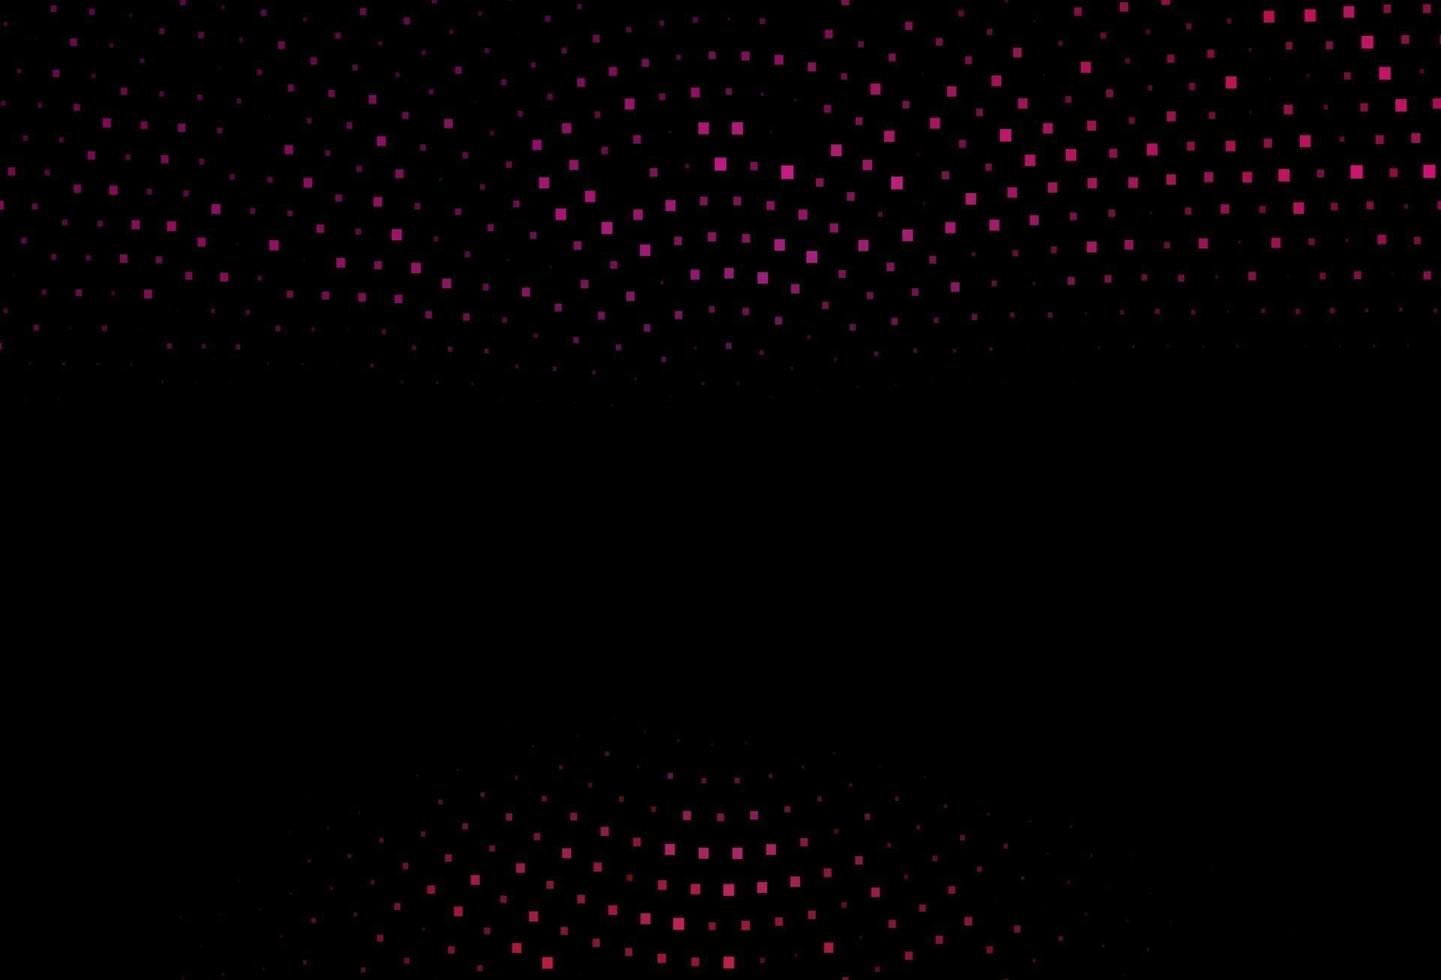 modelo de vetor rosa escuro com cristais, retângulos.